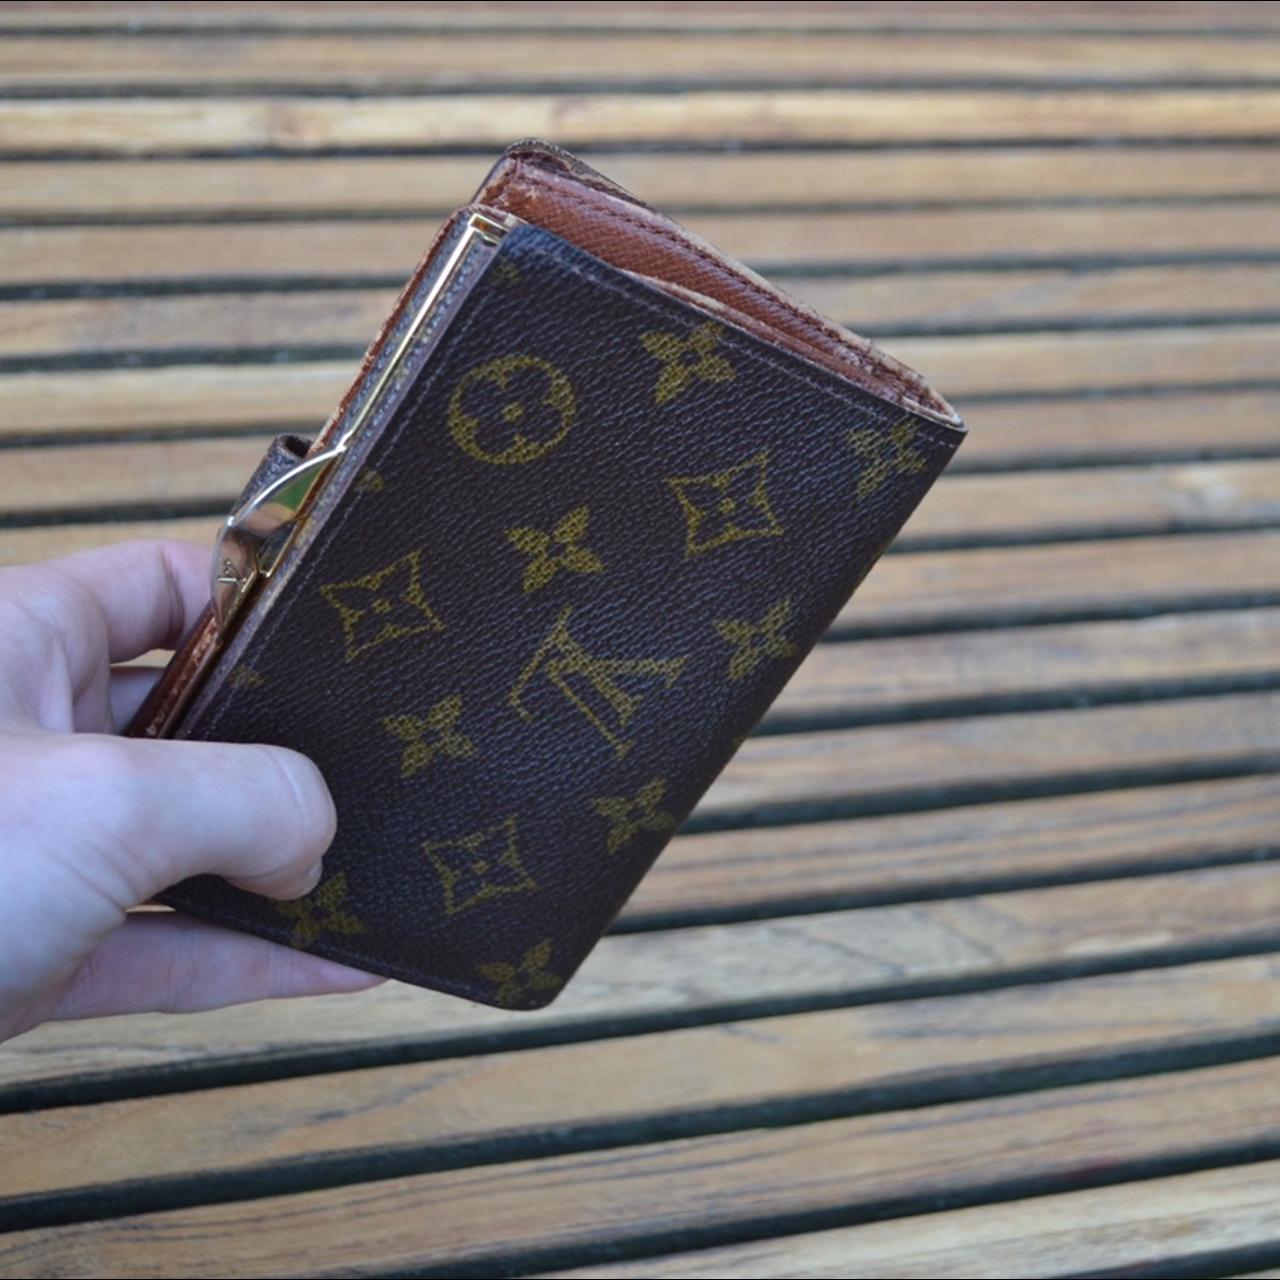 Louis Vuitton Card Holder Wallet Monogram in Fuchsia - Depop